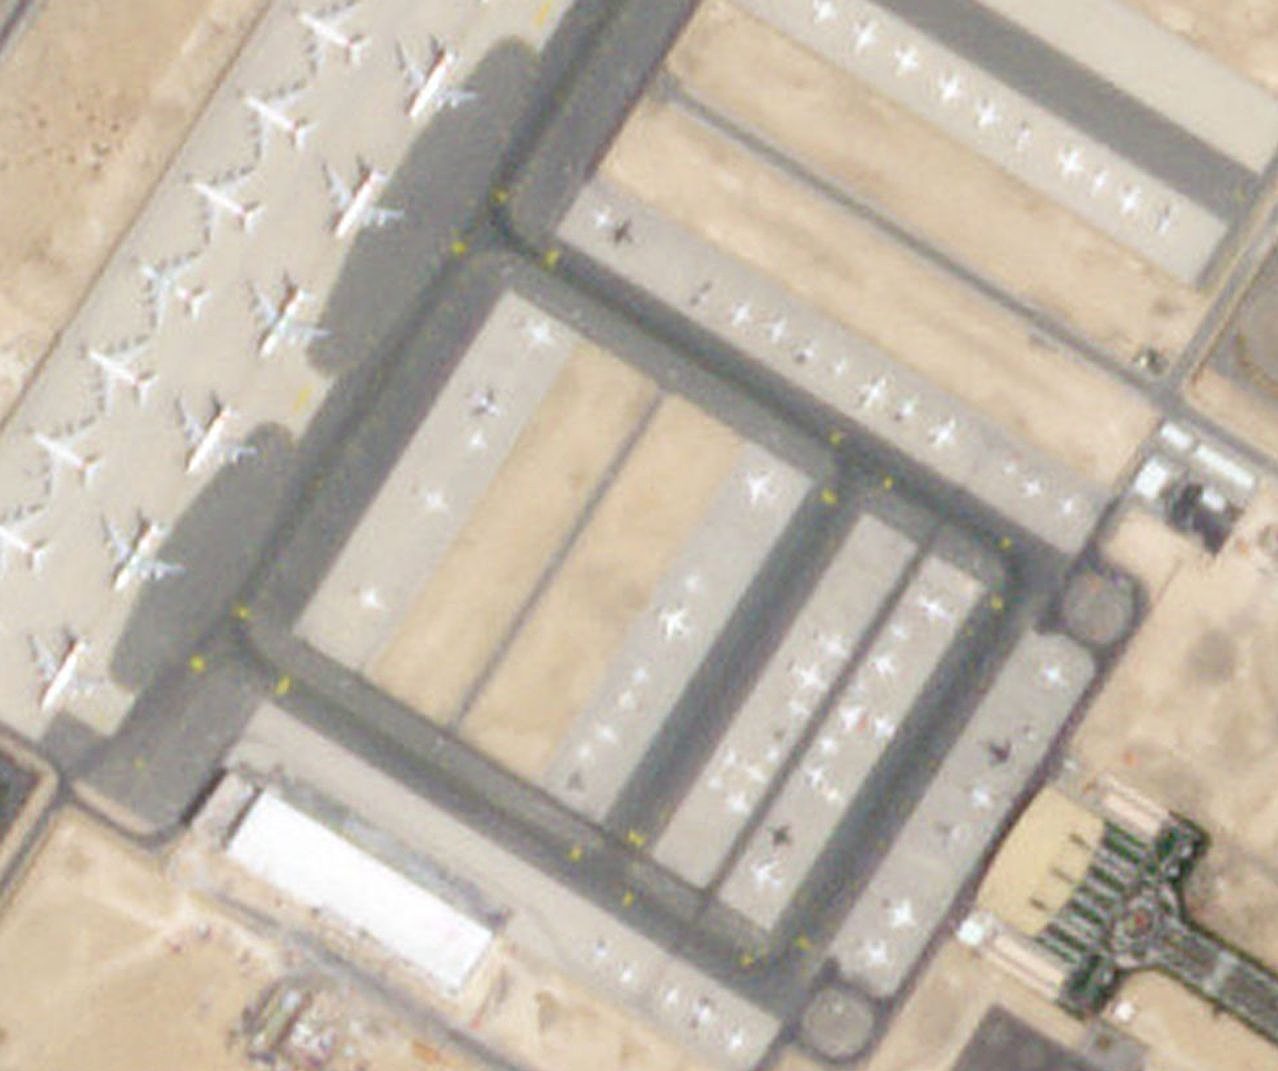 Ảnh vệ tinh chụp sân bay Al Maktoum của Dubai ngày 31/3 đông đúc máy bay gửi lại. Ảnh: Planet Labs PBC